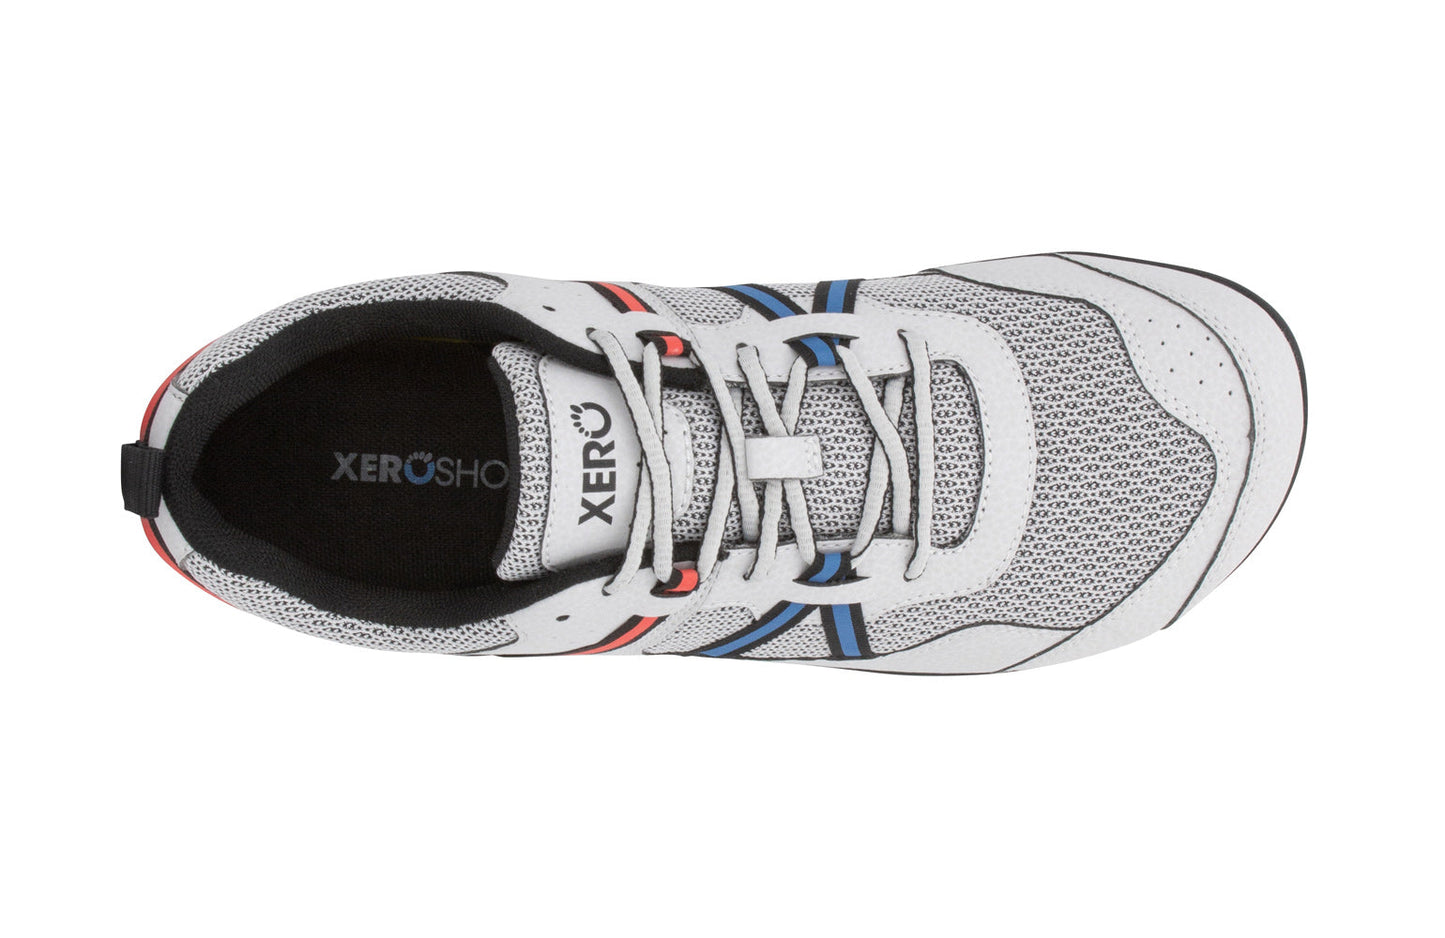 Xero Shoes Prio barfods løbesko/træningssko til mænd i farven lunar, top